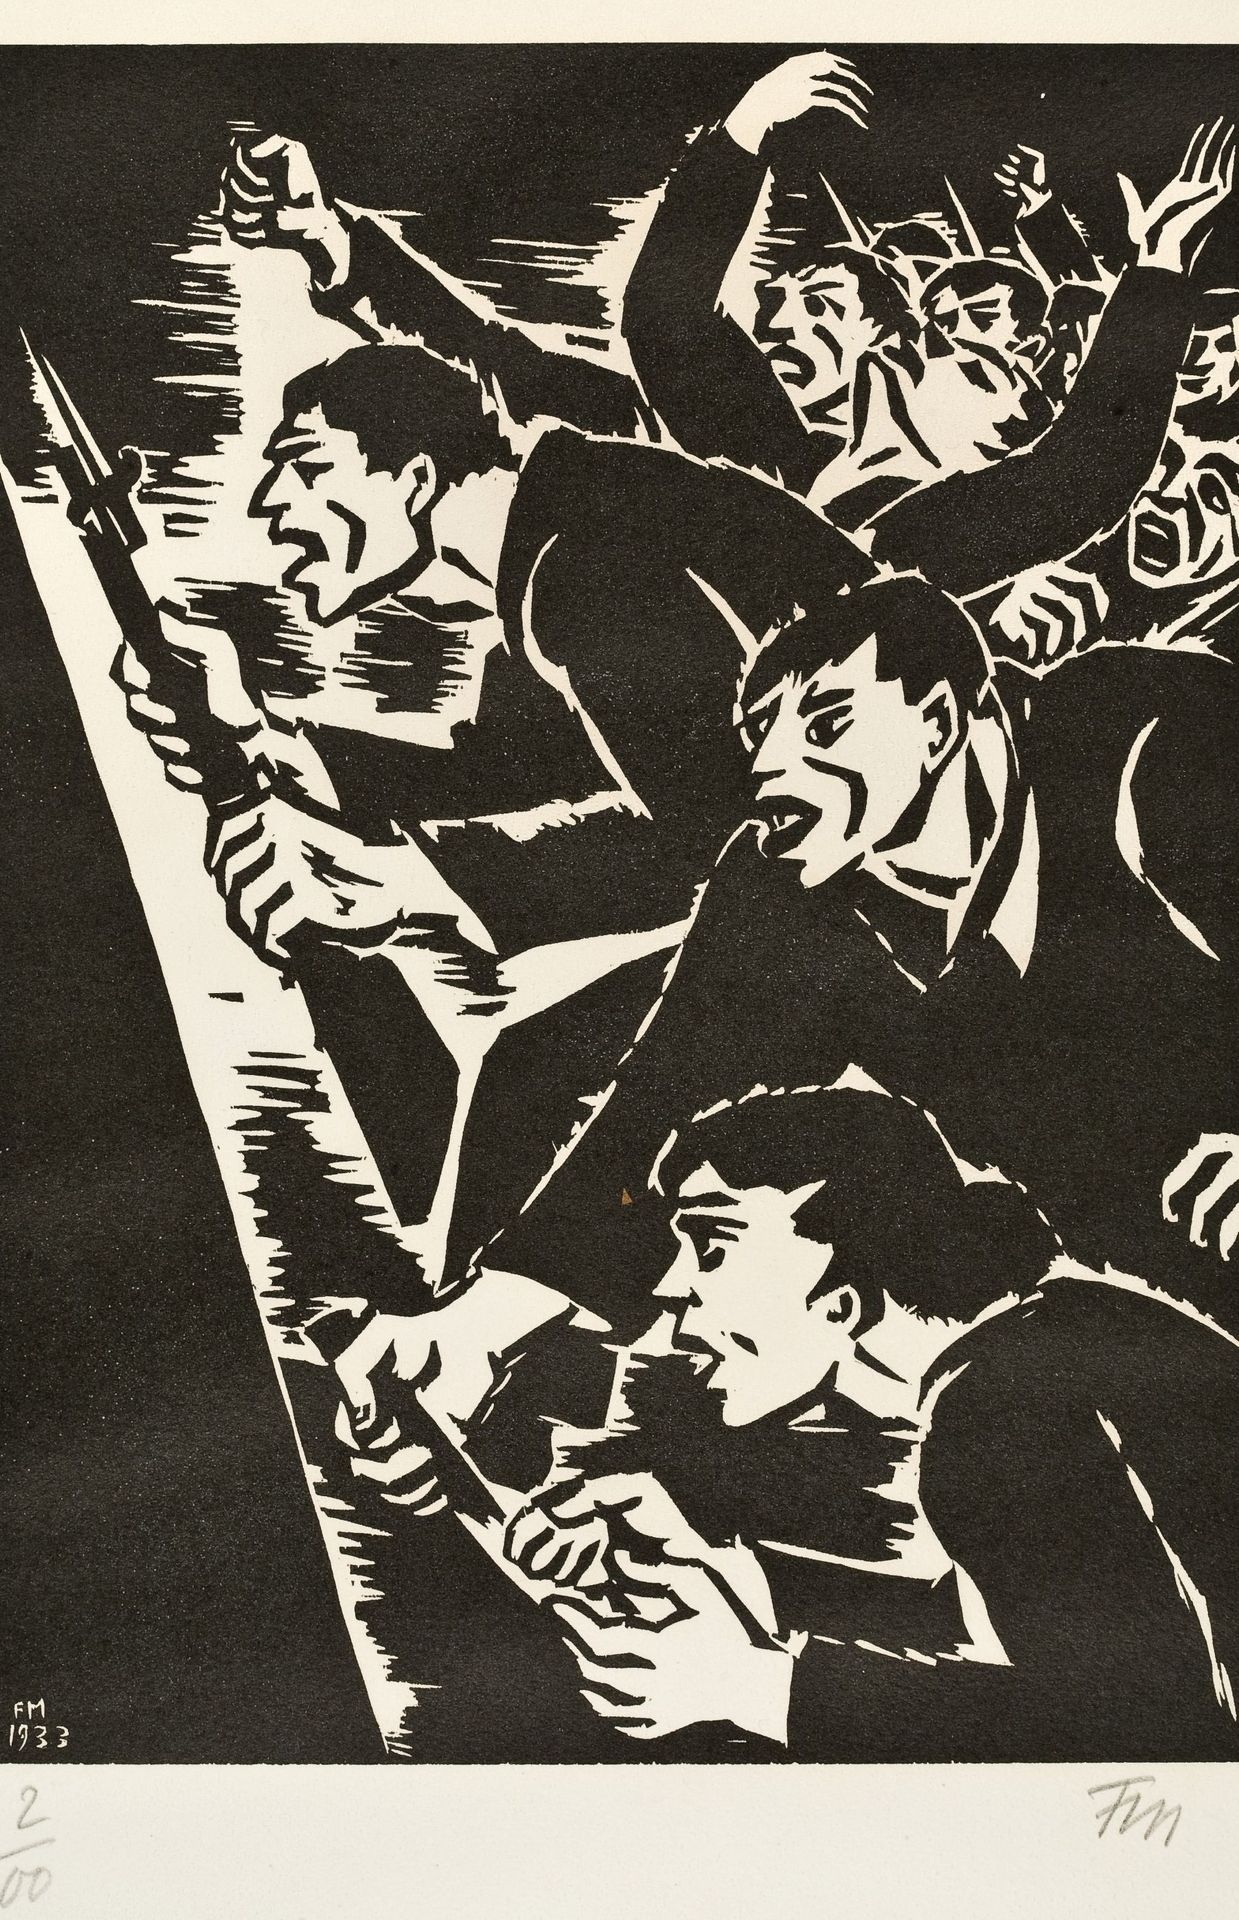 Manifestation, Frans Masereel -1933